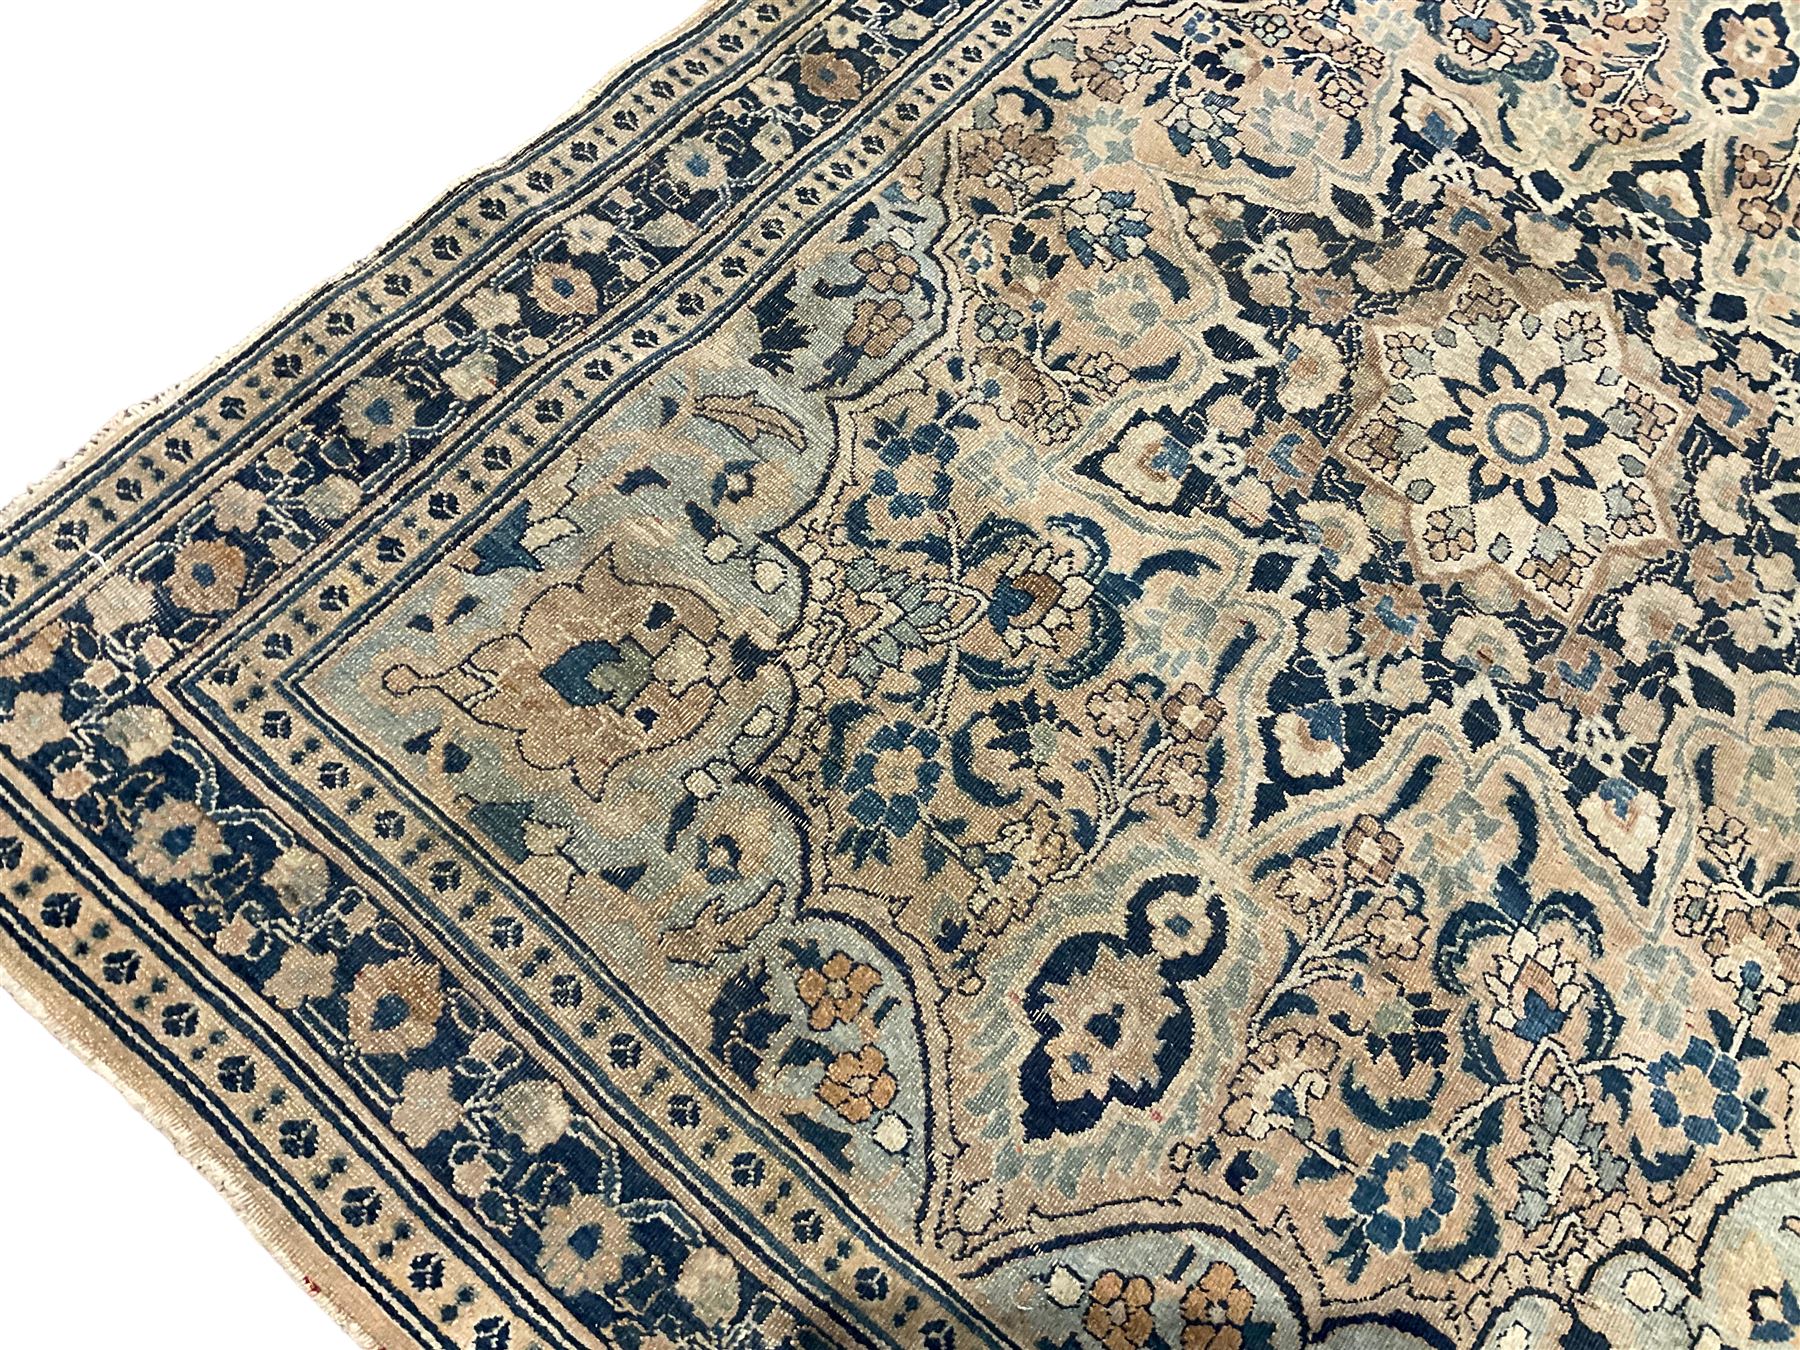 Antique Persian Nain indigo and ivory rug - Image 5 of 6